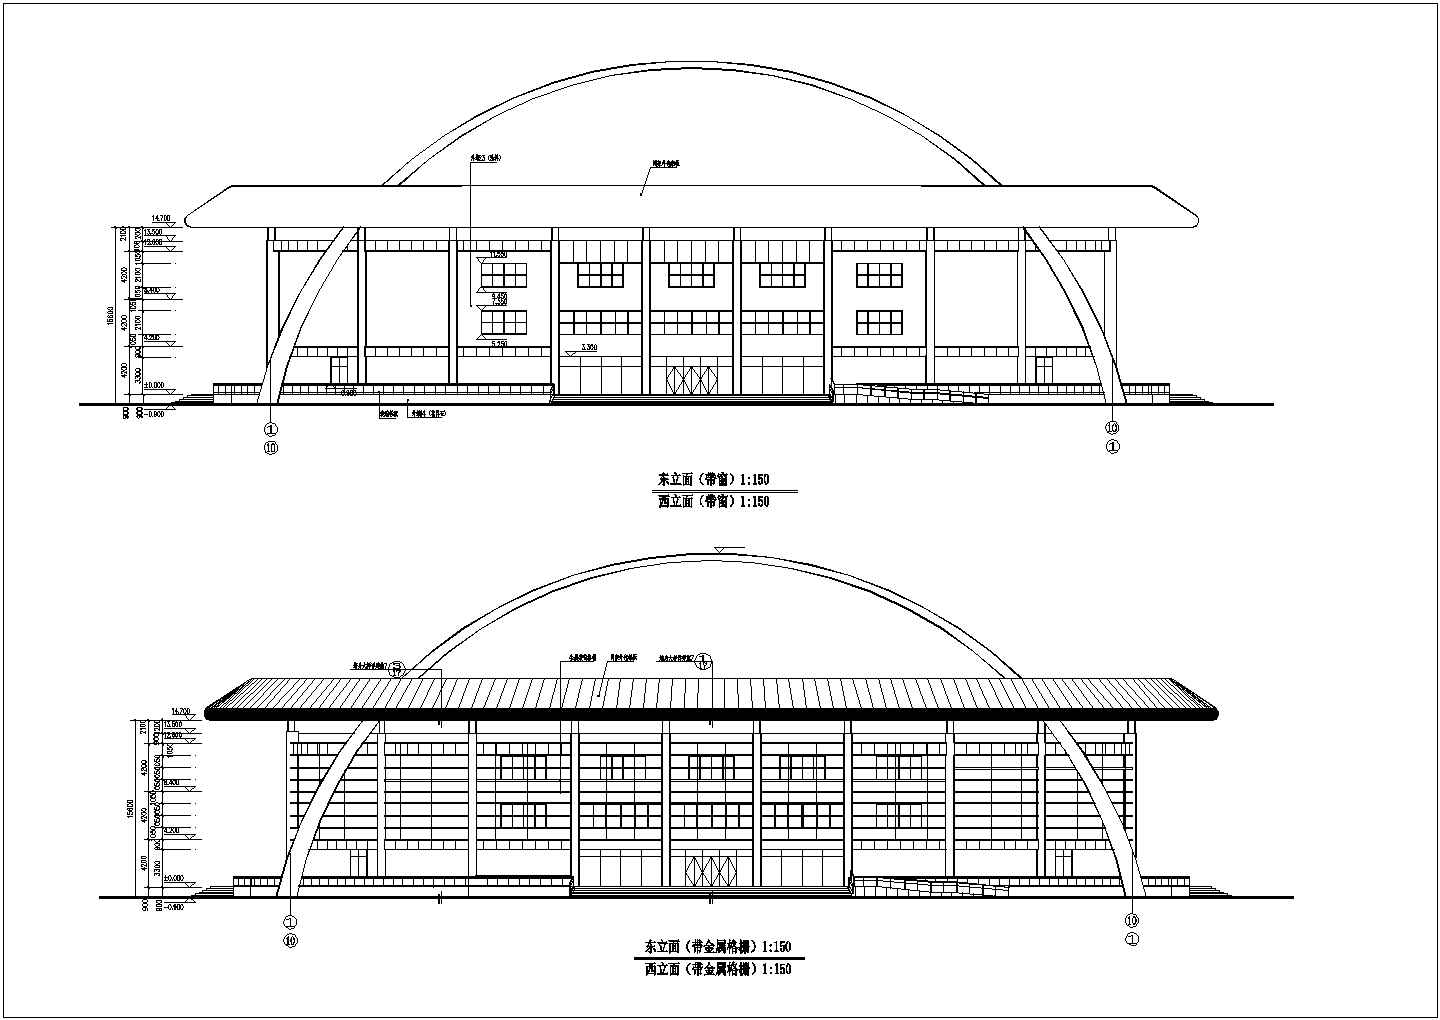 洛阳市体育中心网球馆全套建筑设计施工图